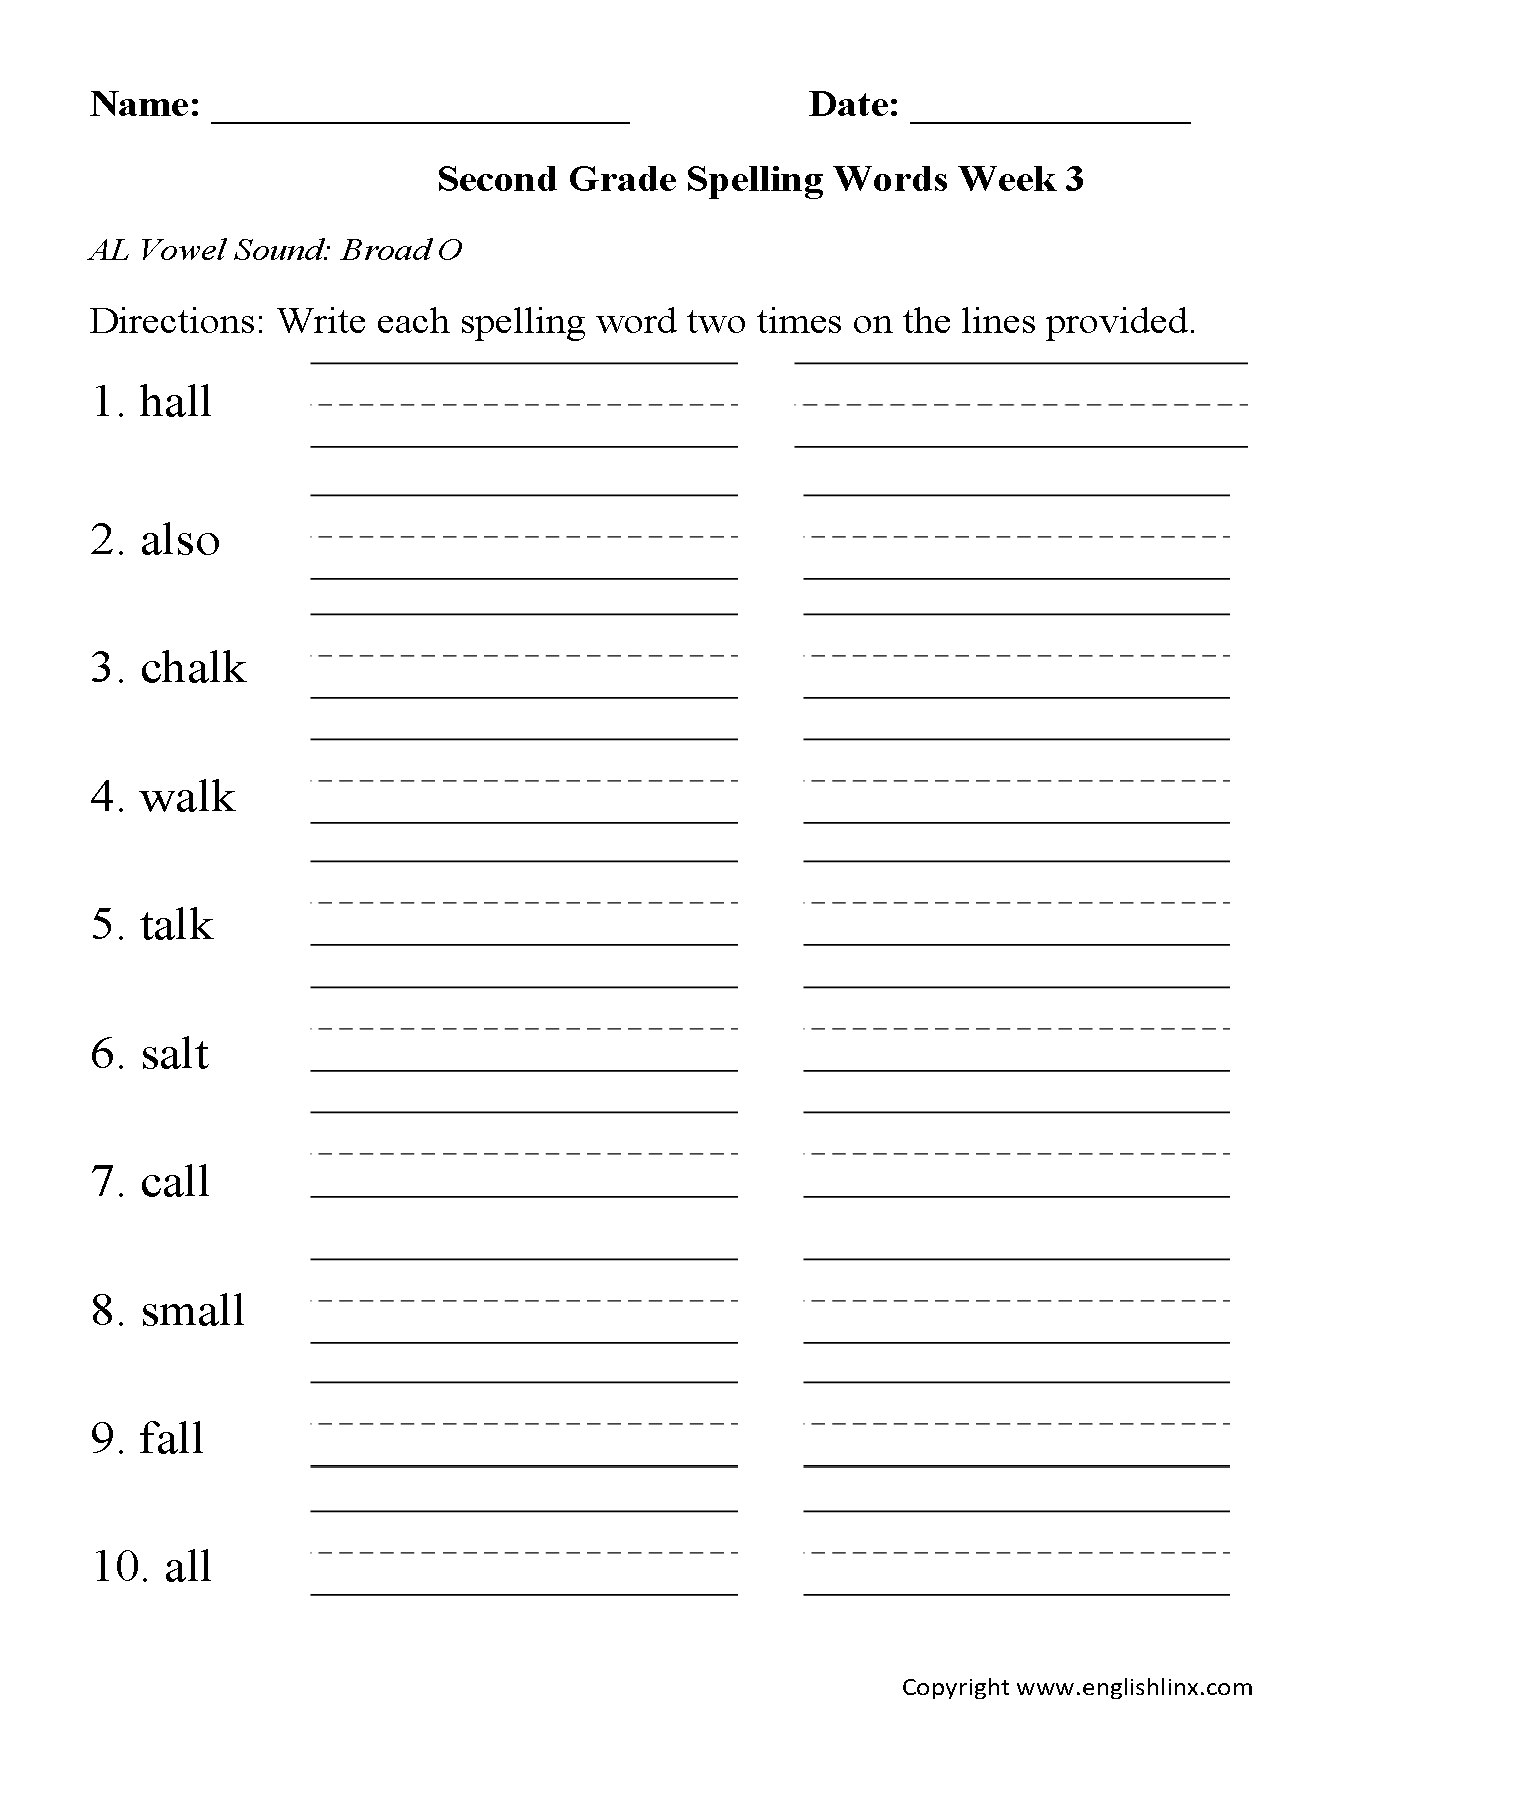 English Worksheets | Spelling Worksheets - Free Printable Spelling Worksheets